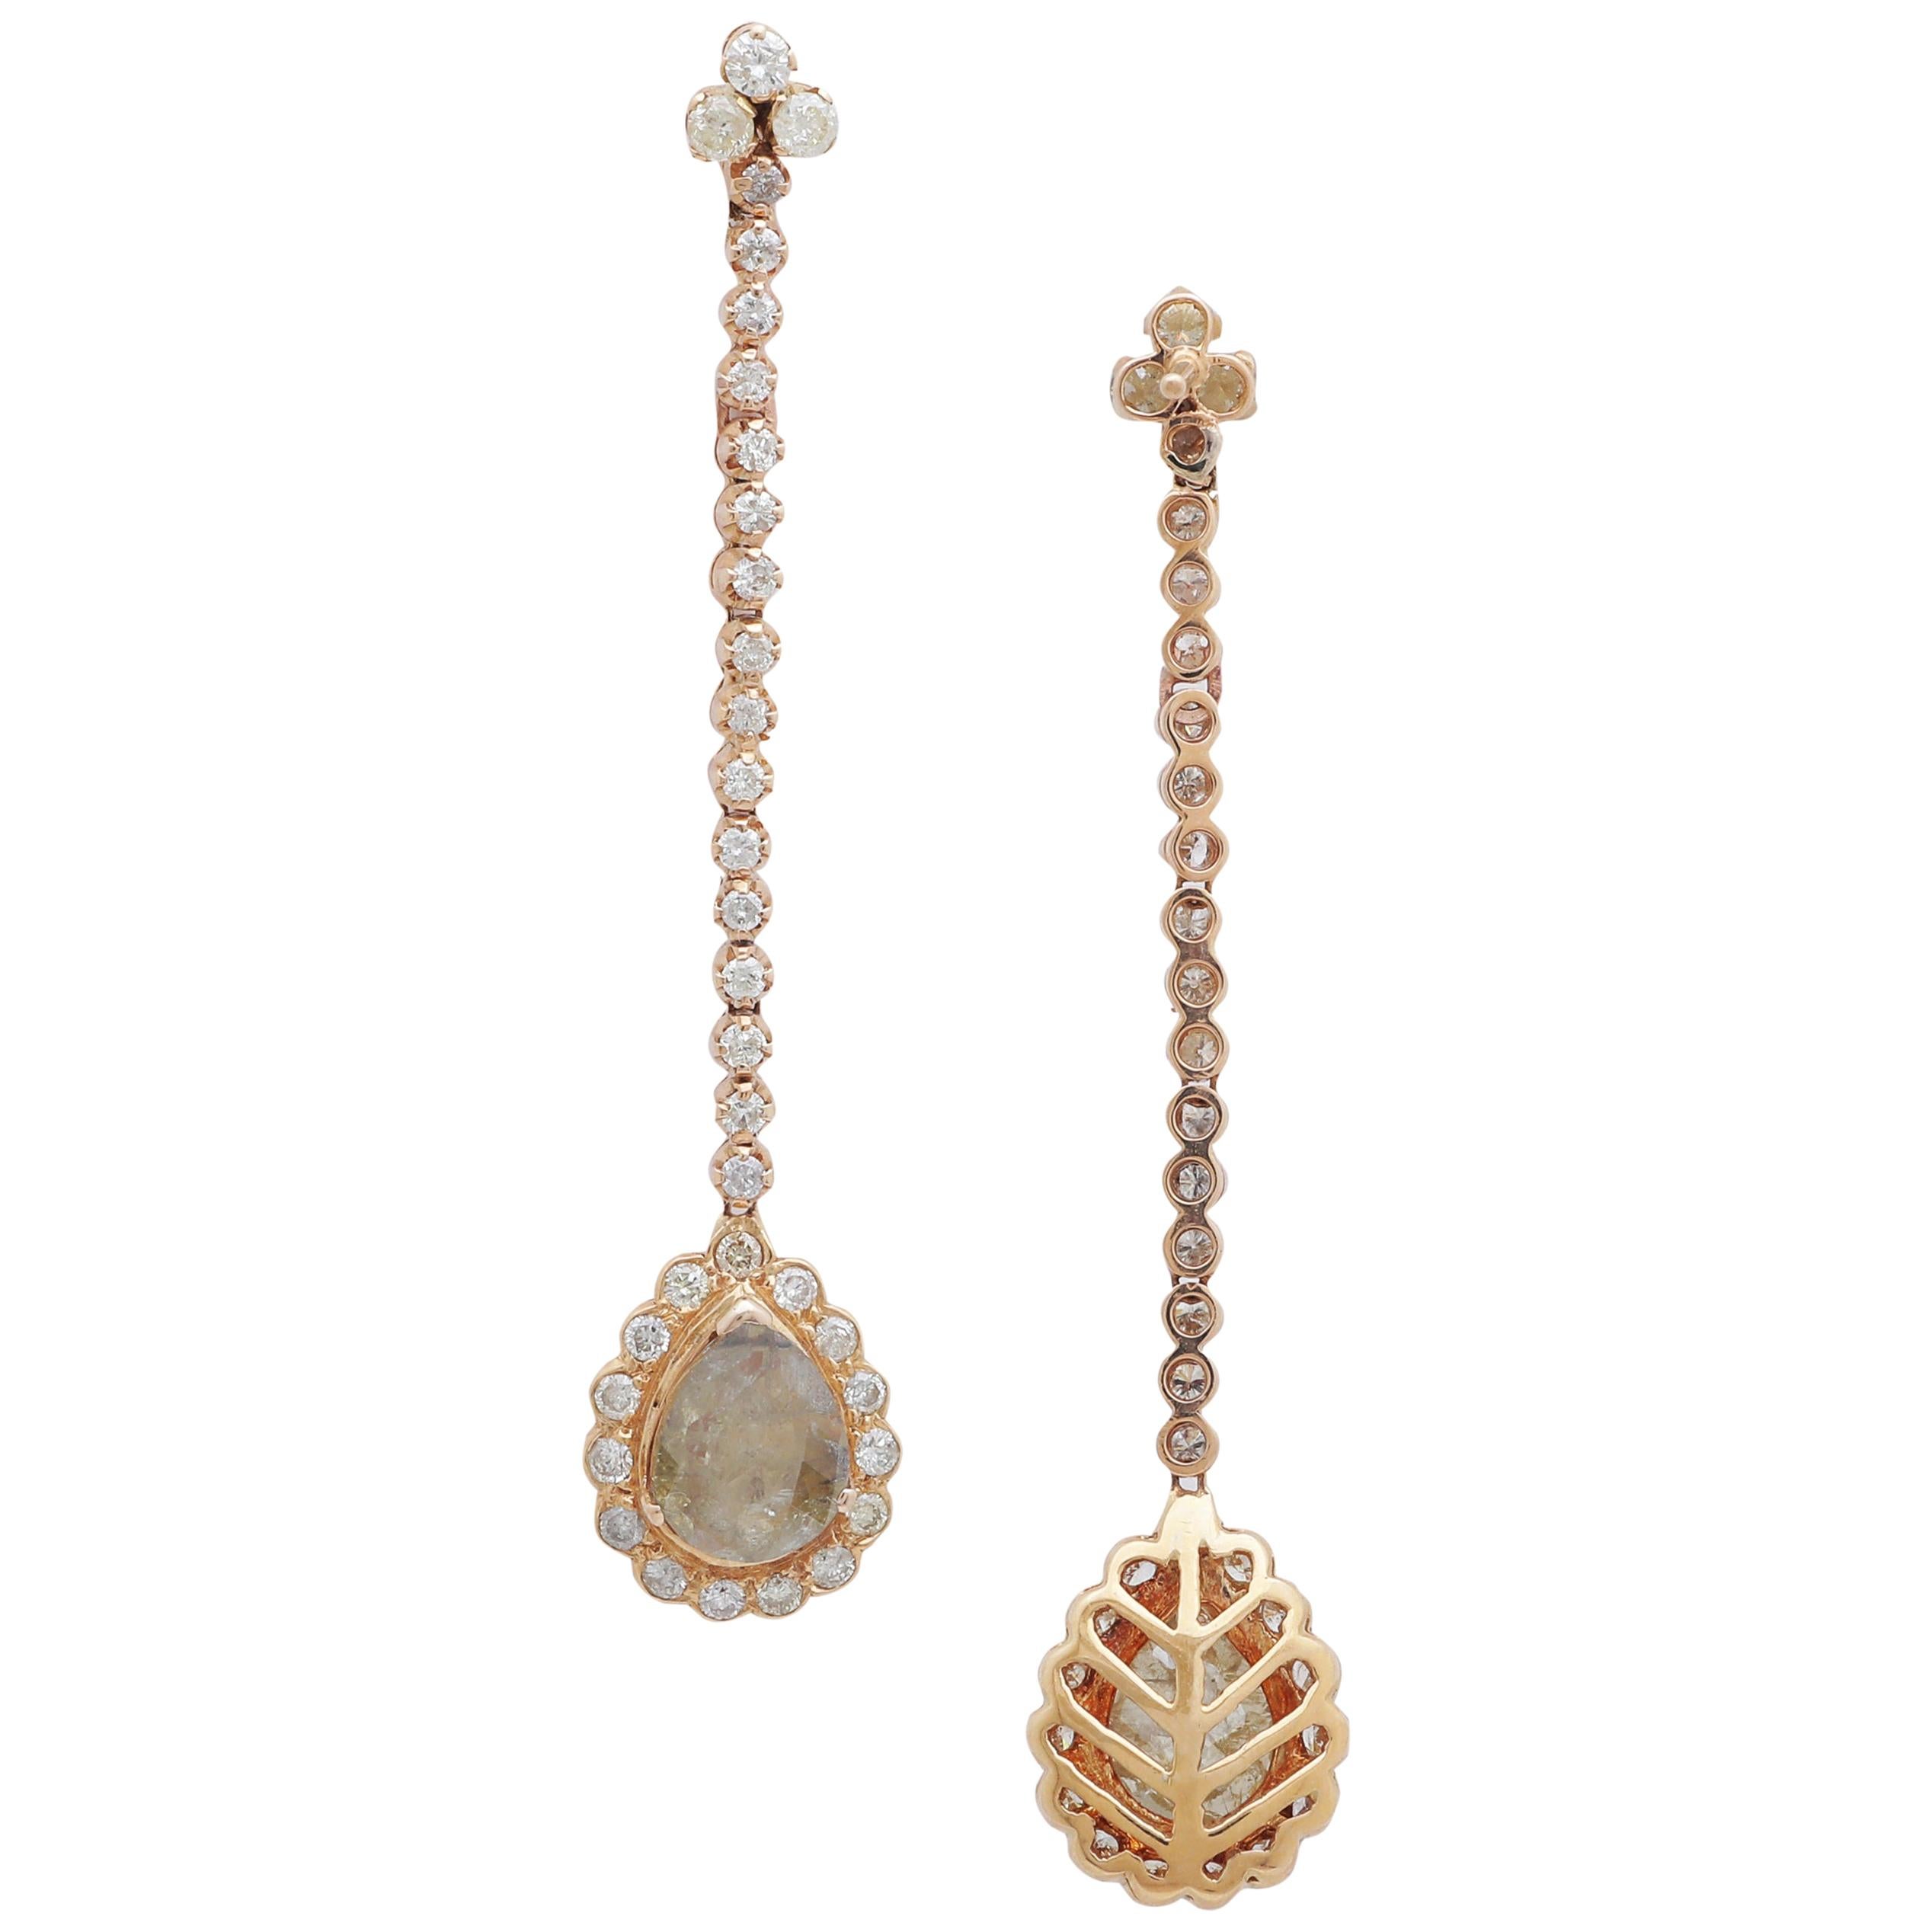 Dangling Diamond Pear Shape Earring Set in 18 Karat Yellow Gold